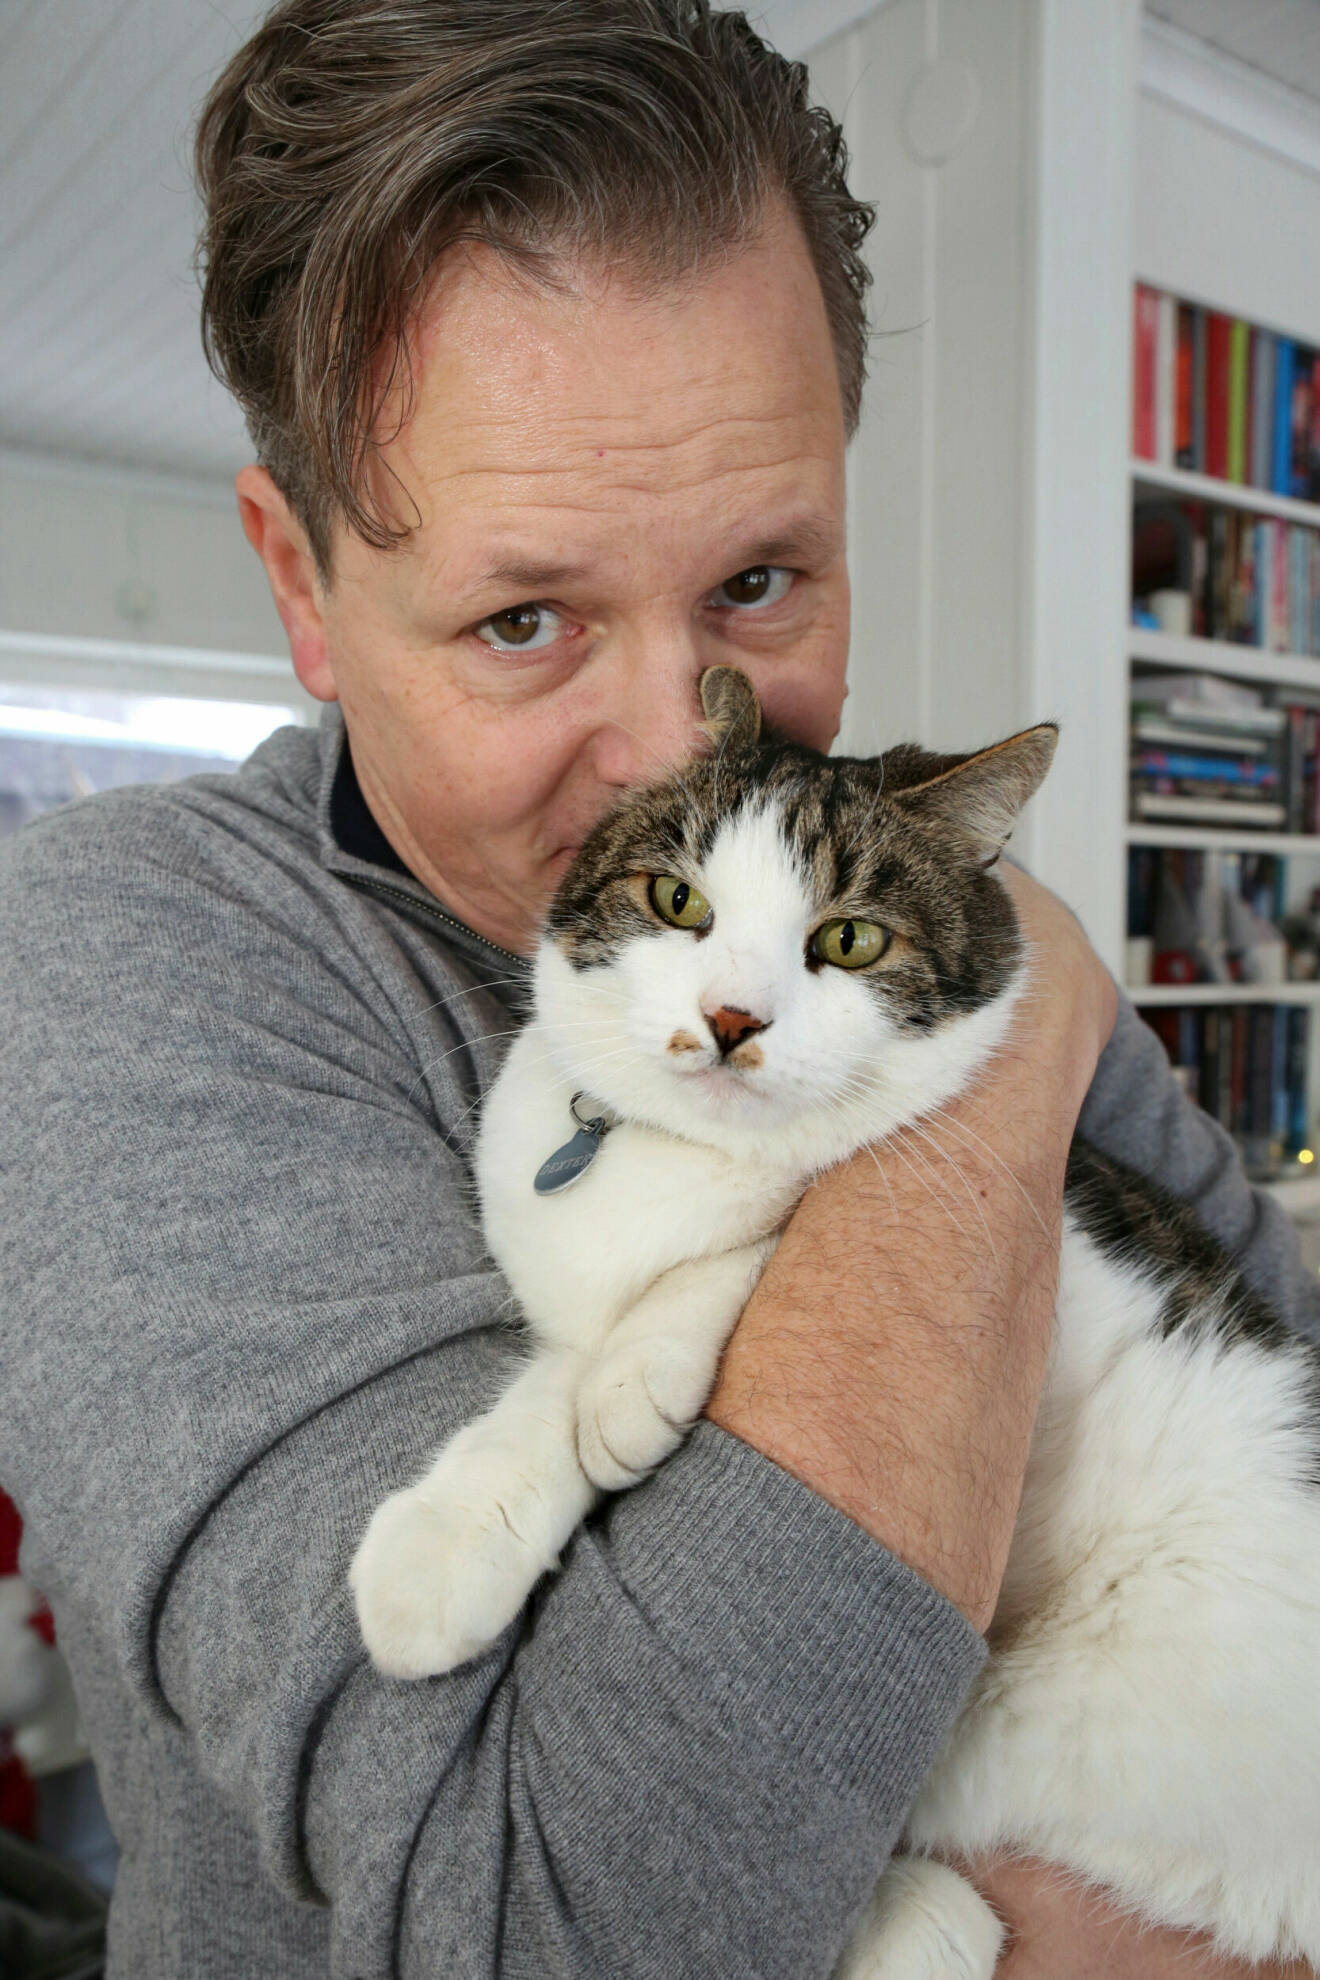 Husse Fredrik gosar med sin katt Dexter. Fredrik har på sig en grå tröja. Dexter är vit och brunspräcklig.